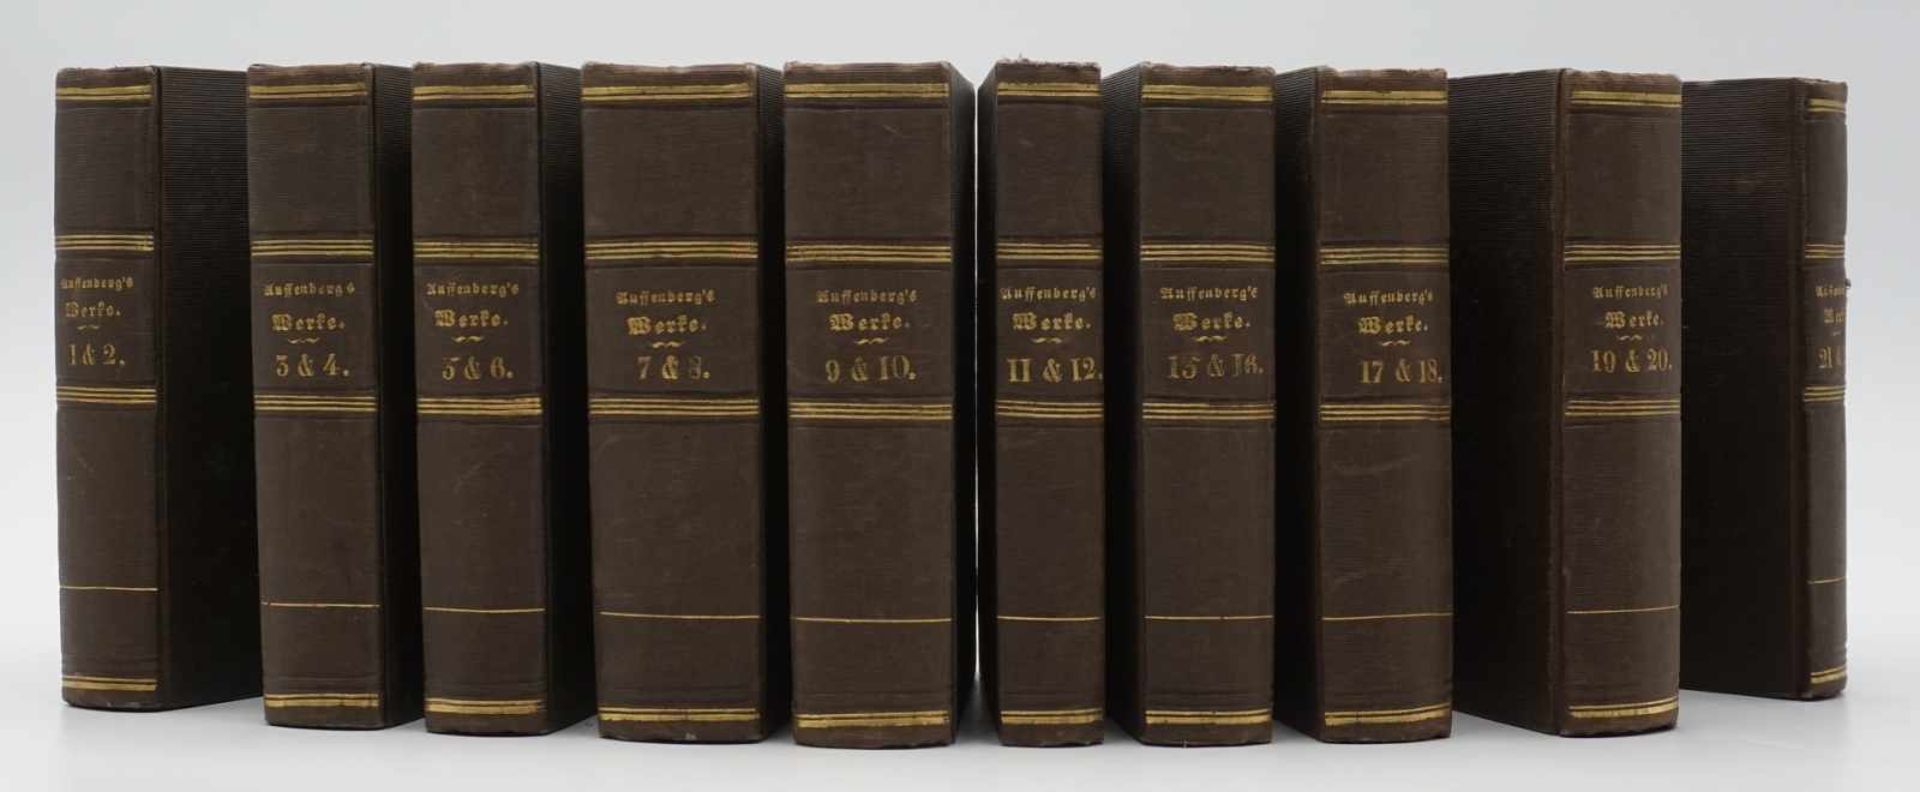 Joseph Freiherr von Auffenberg, "Sämtliche Werke in 20 Bänden"1843-1844, 10 Bücher, mit